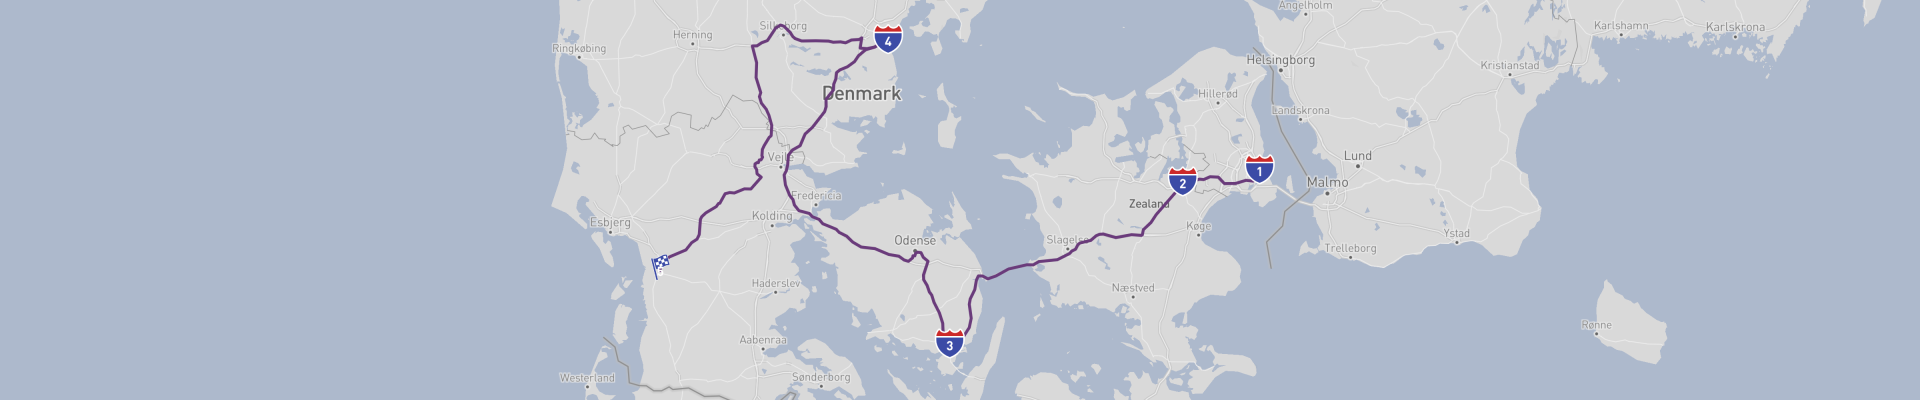 Viagem de carro do Báltico ao Mar do Norte